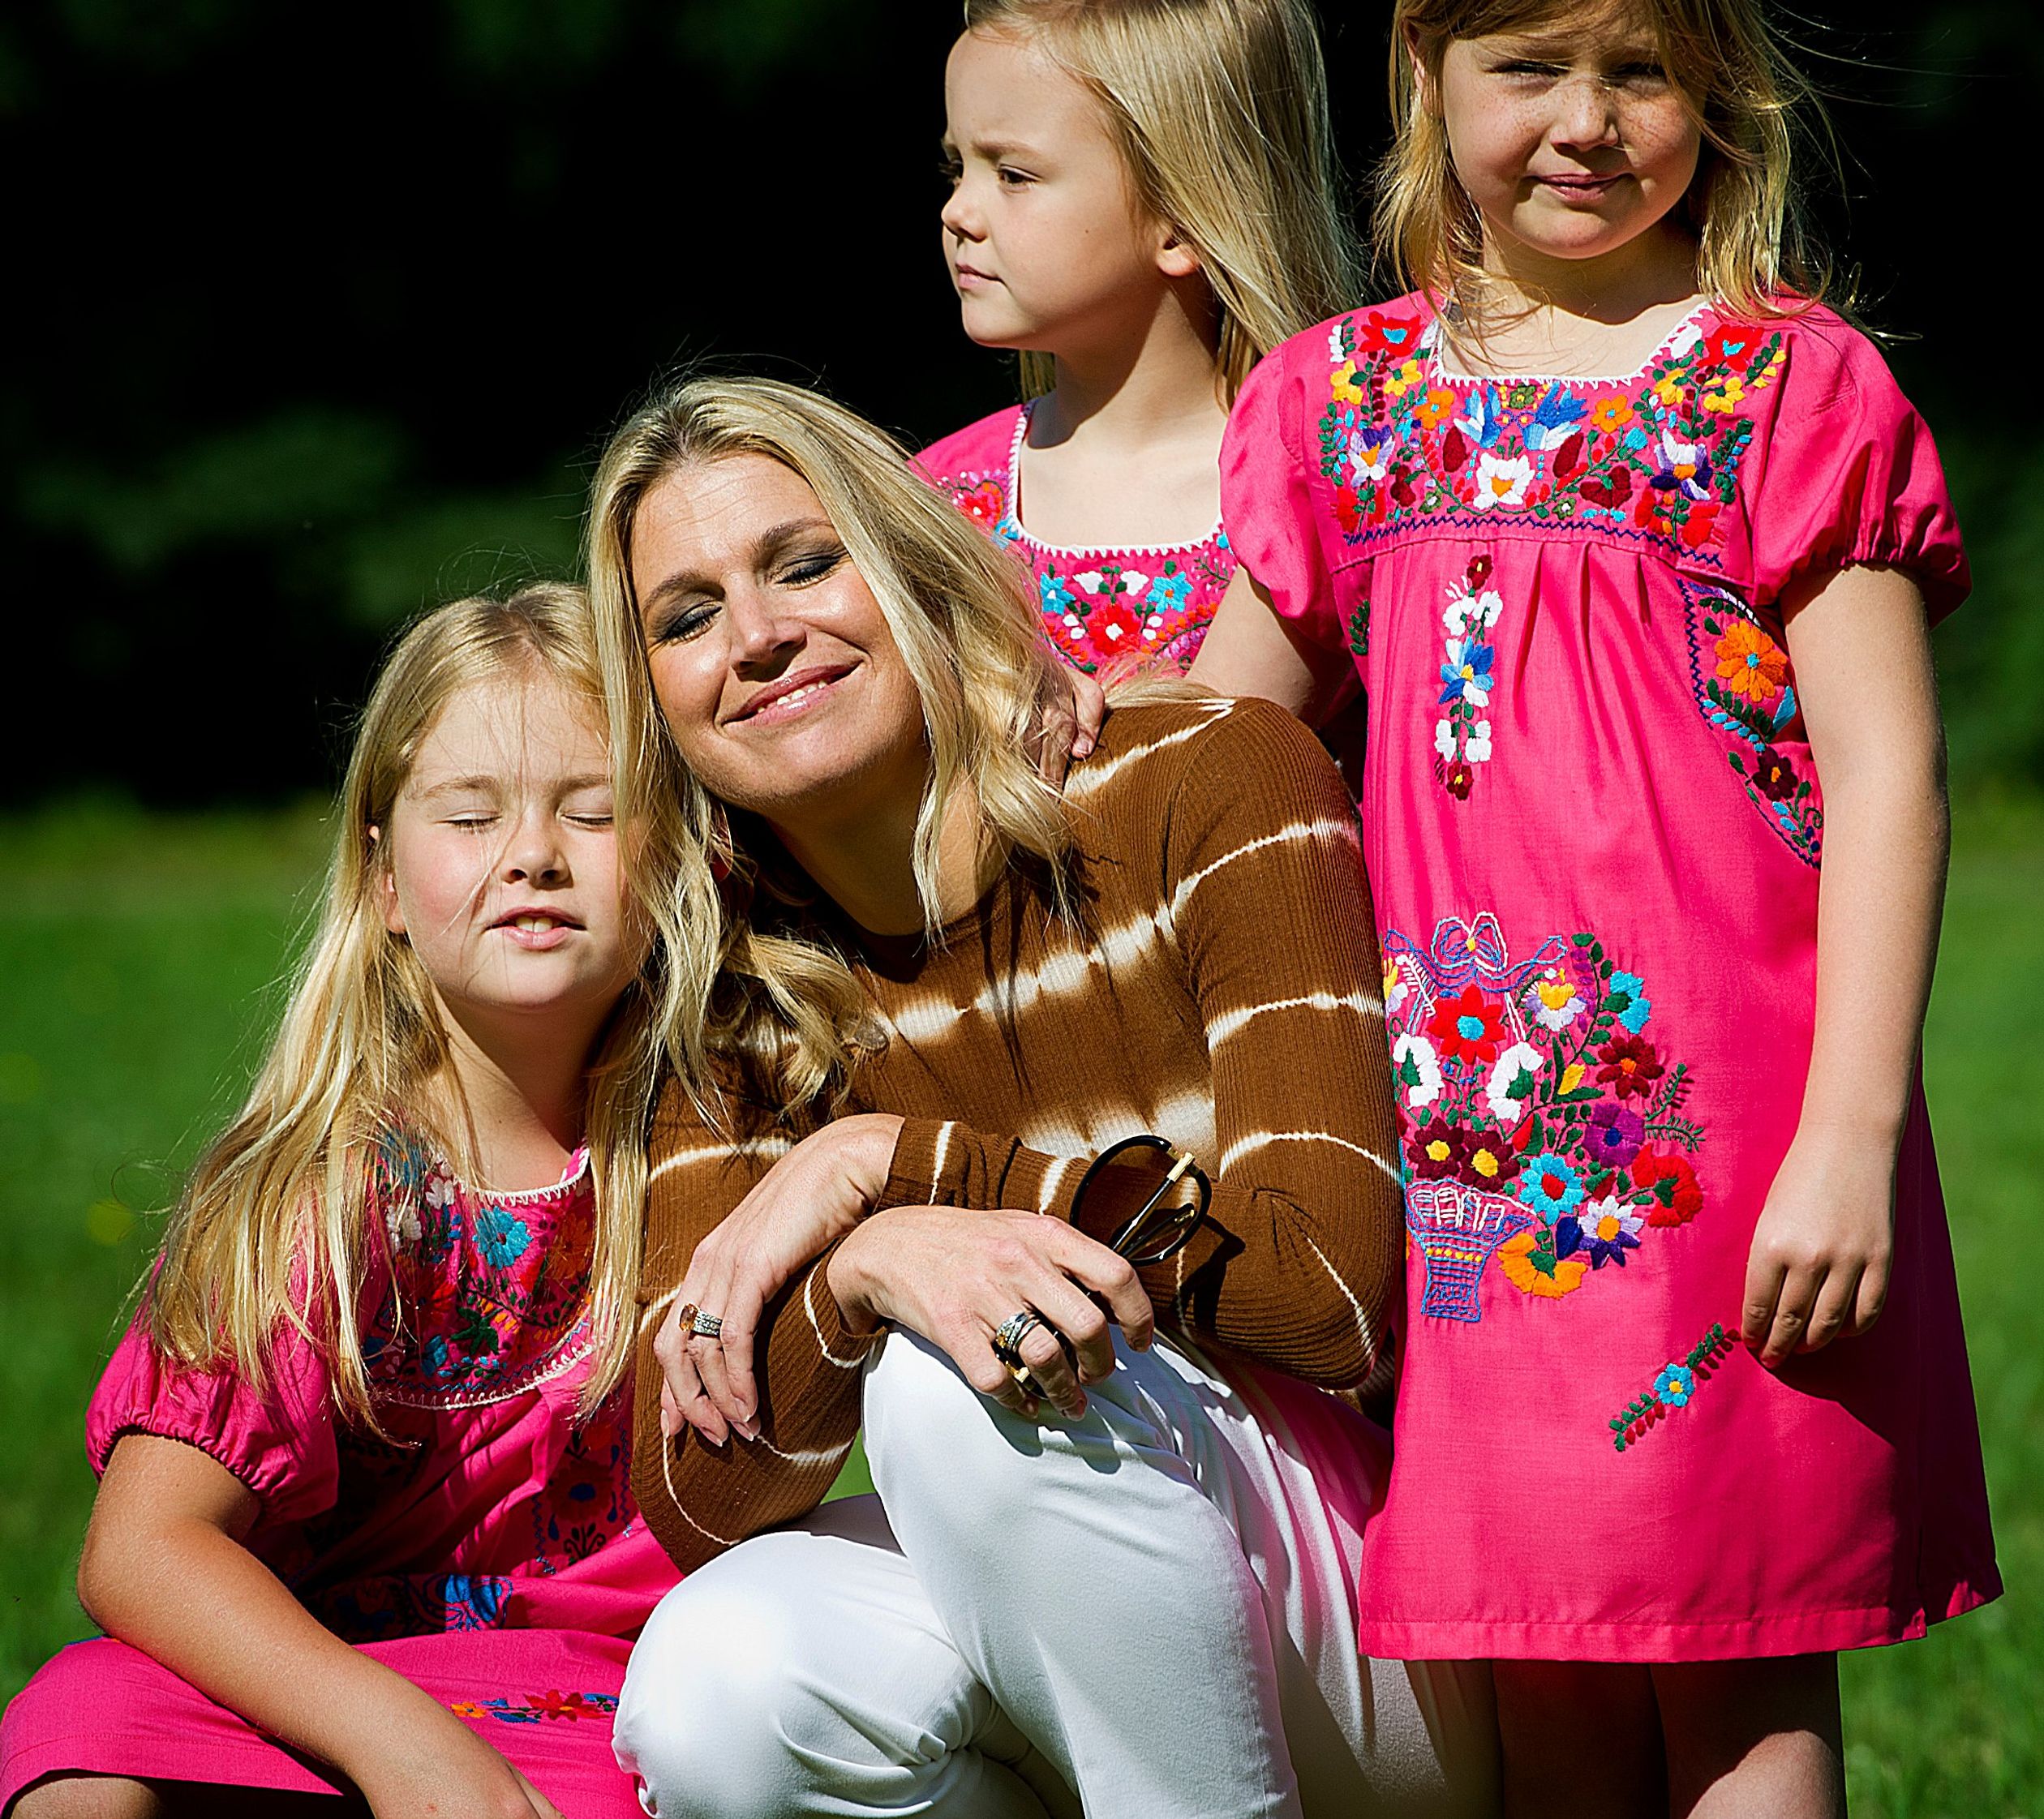 7 juli 2012: De koningin met haar dochters tijdens de jaarlijkse koninklijke fotosessie bij hun